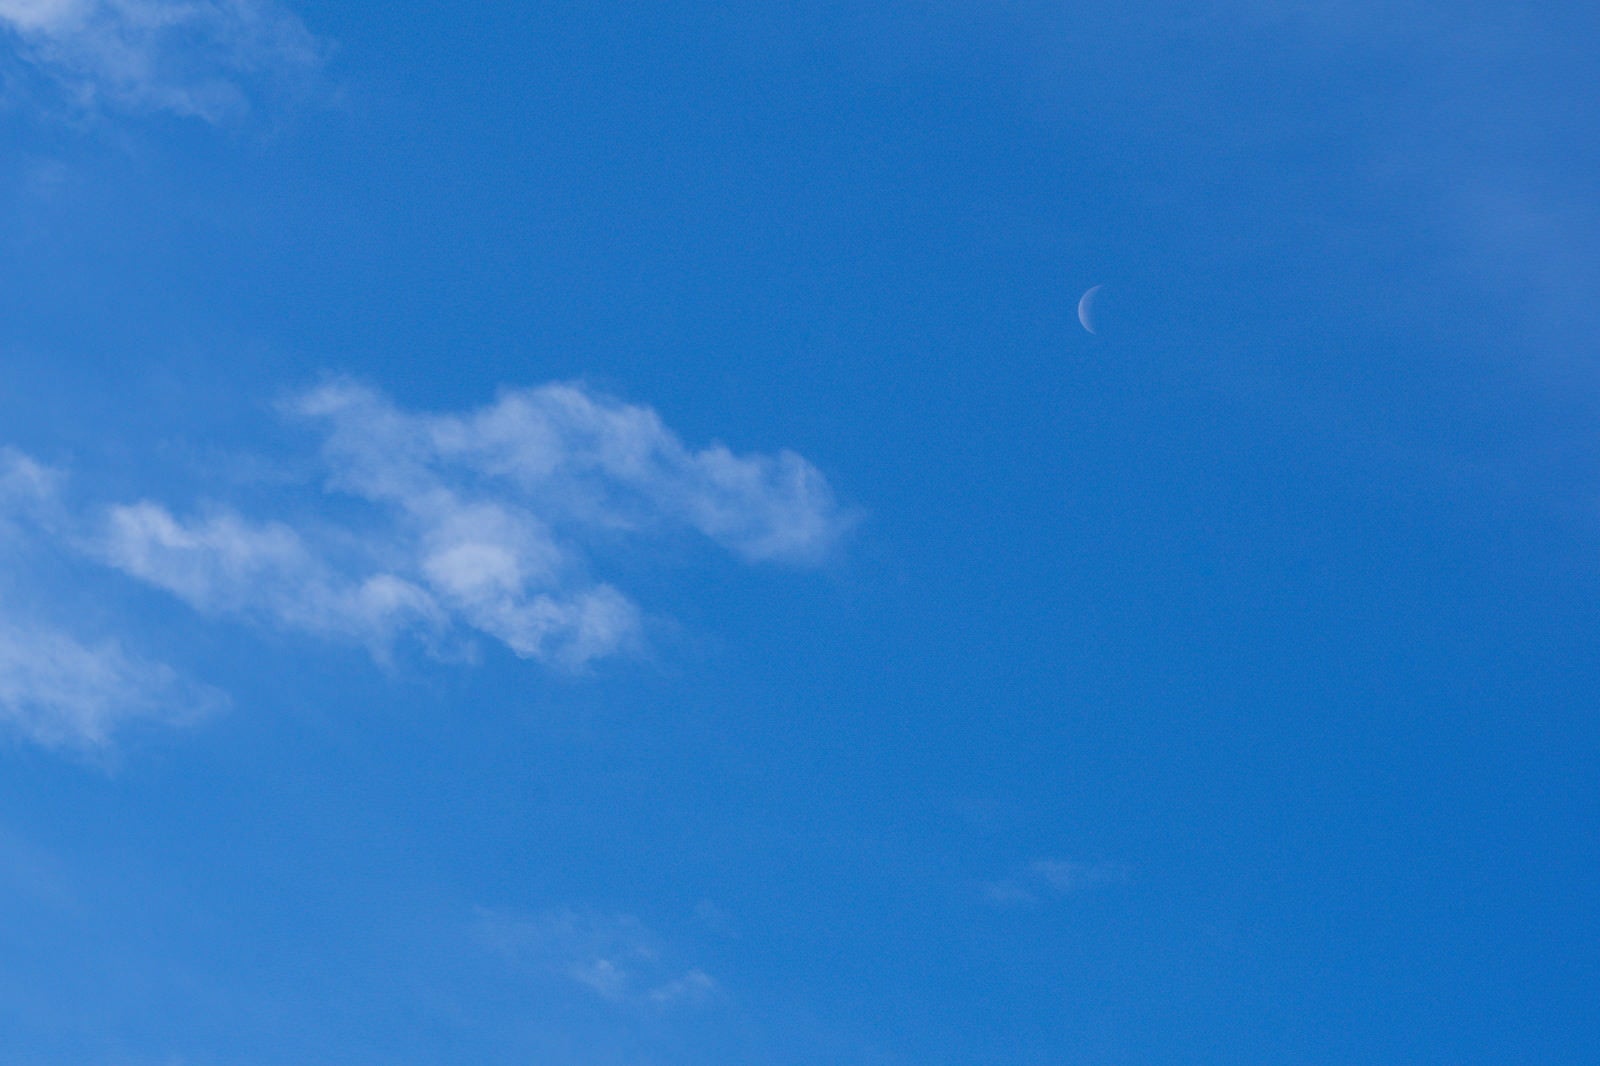 「青空に浮かぶはかなげな月」の写真